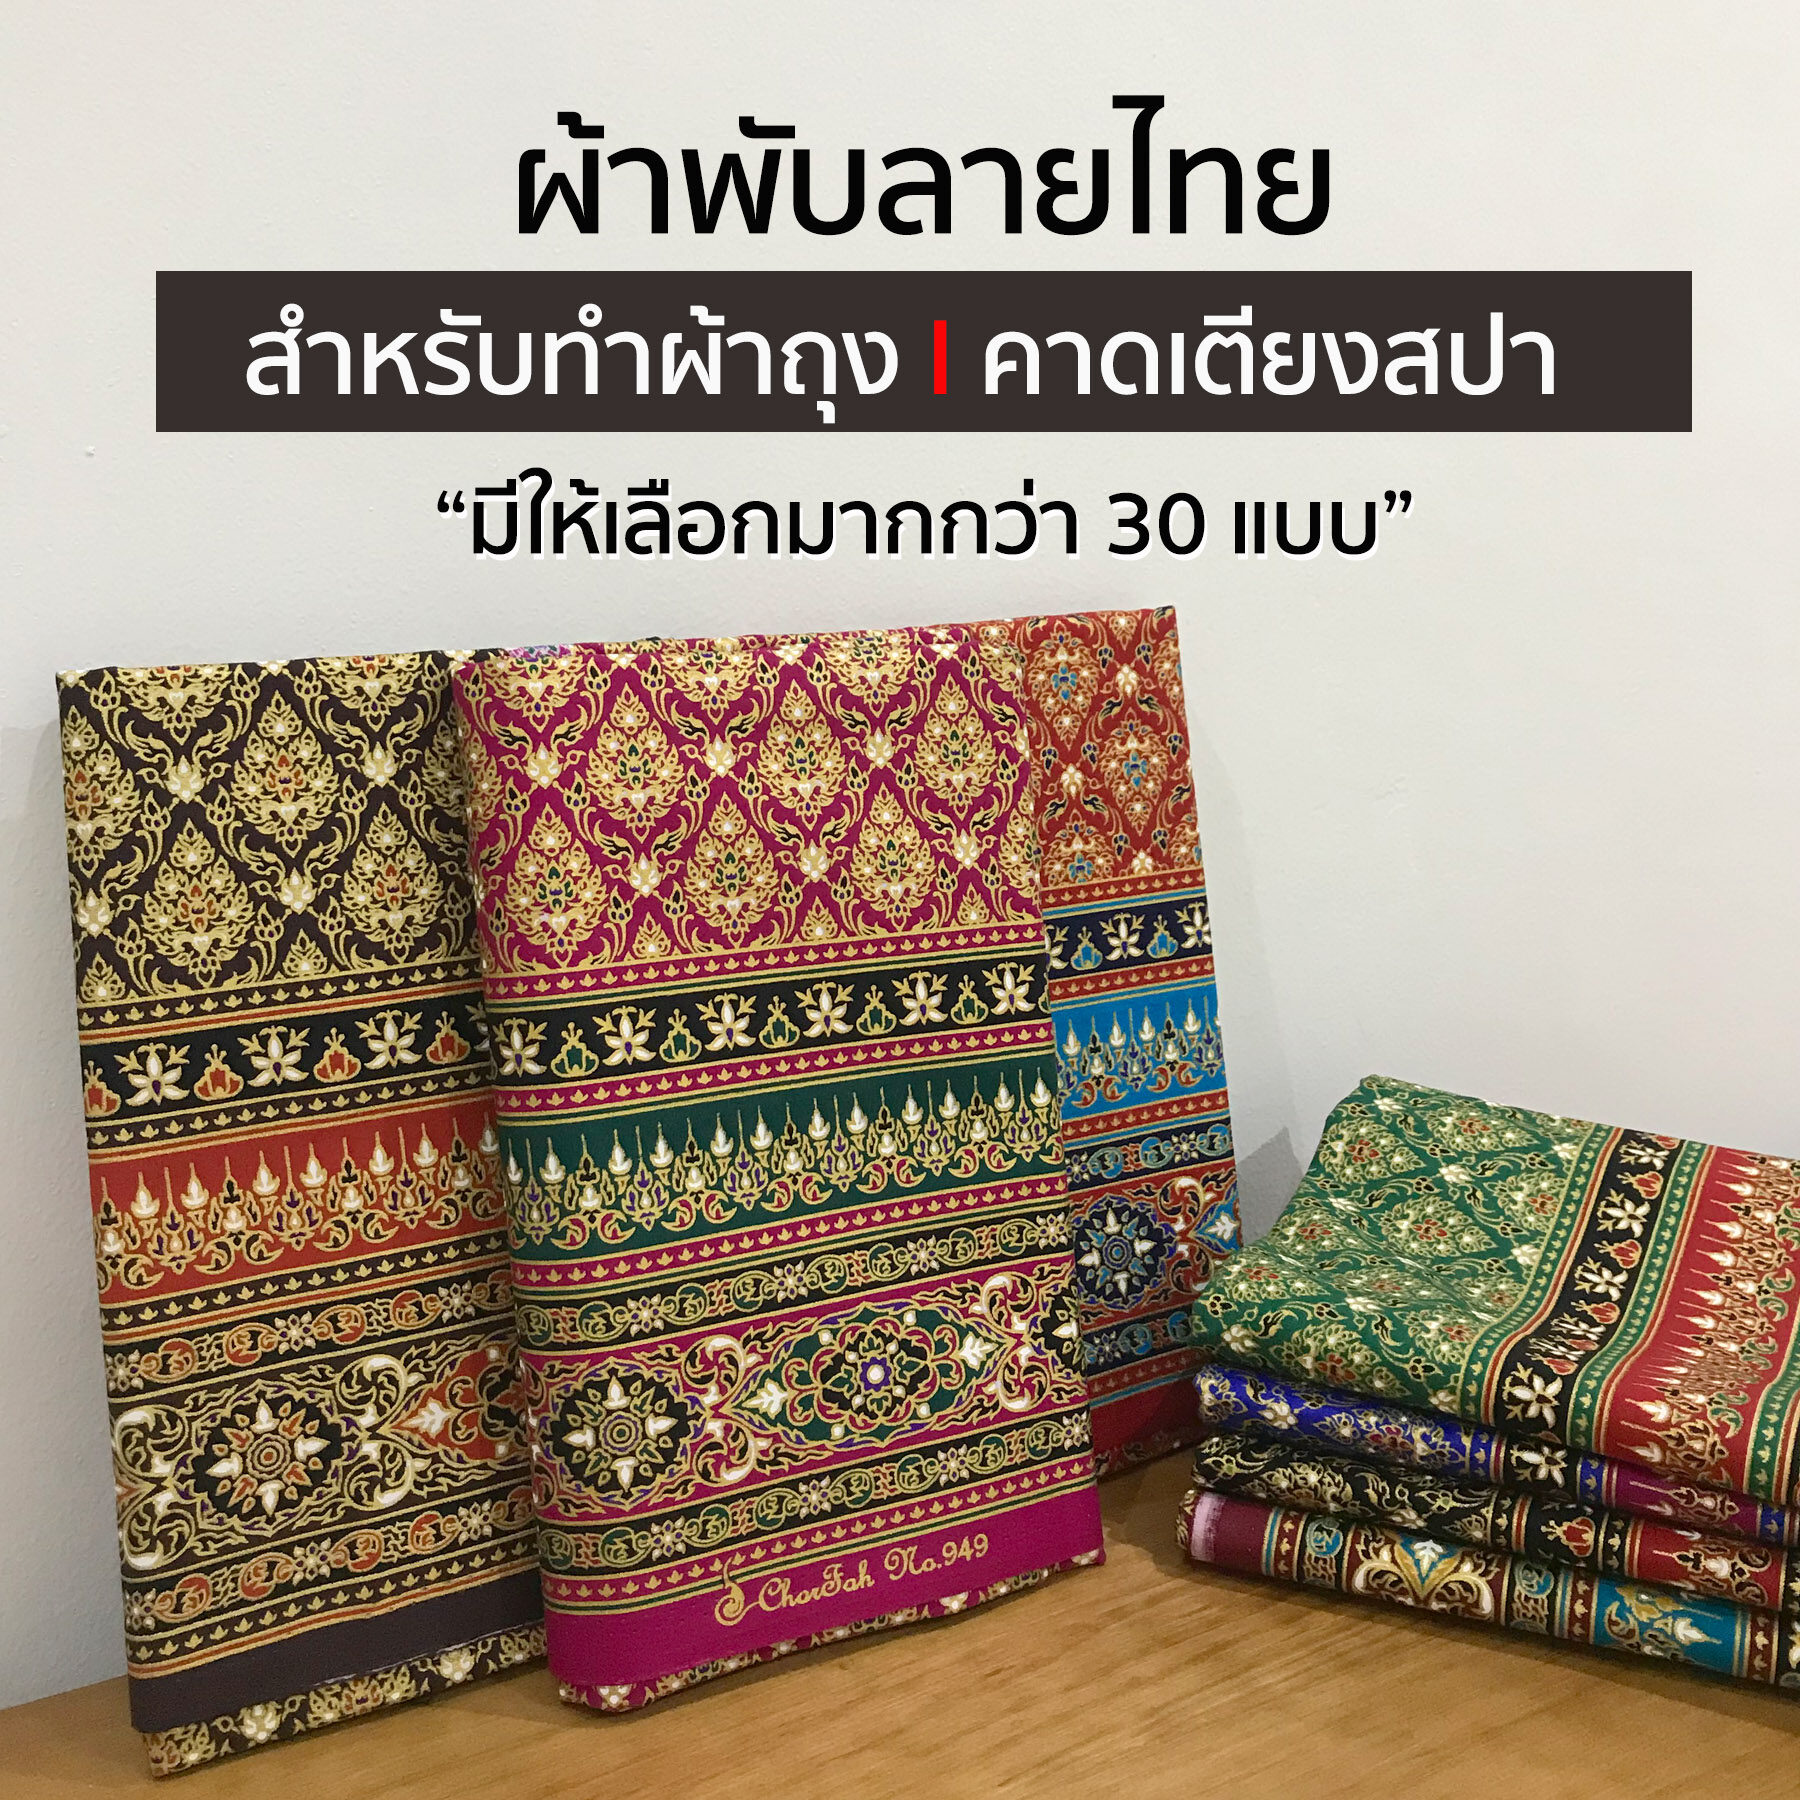 ผ้าลายไทย ผ้าพิมพ์ลาย ความกว้าง 1 เมตร ความยาว 2 เมตร สามารถนำมาตัดเย็บเป็น ผ้าถุง ผ้าปูเตียง ผ้าคาดเตียง